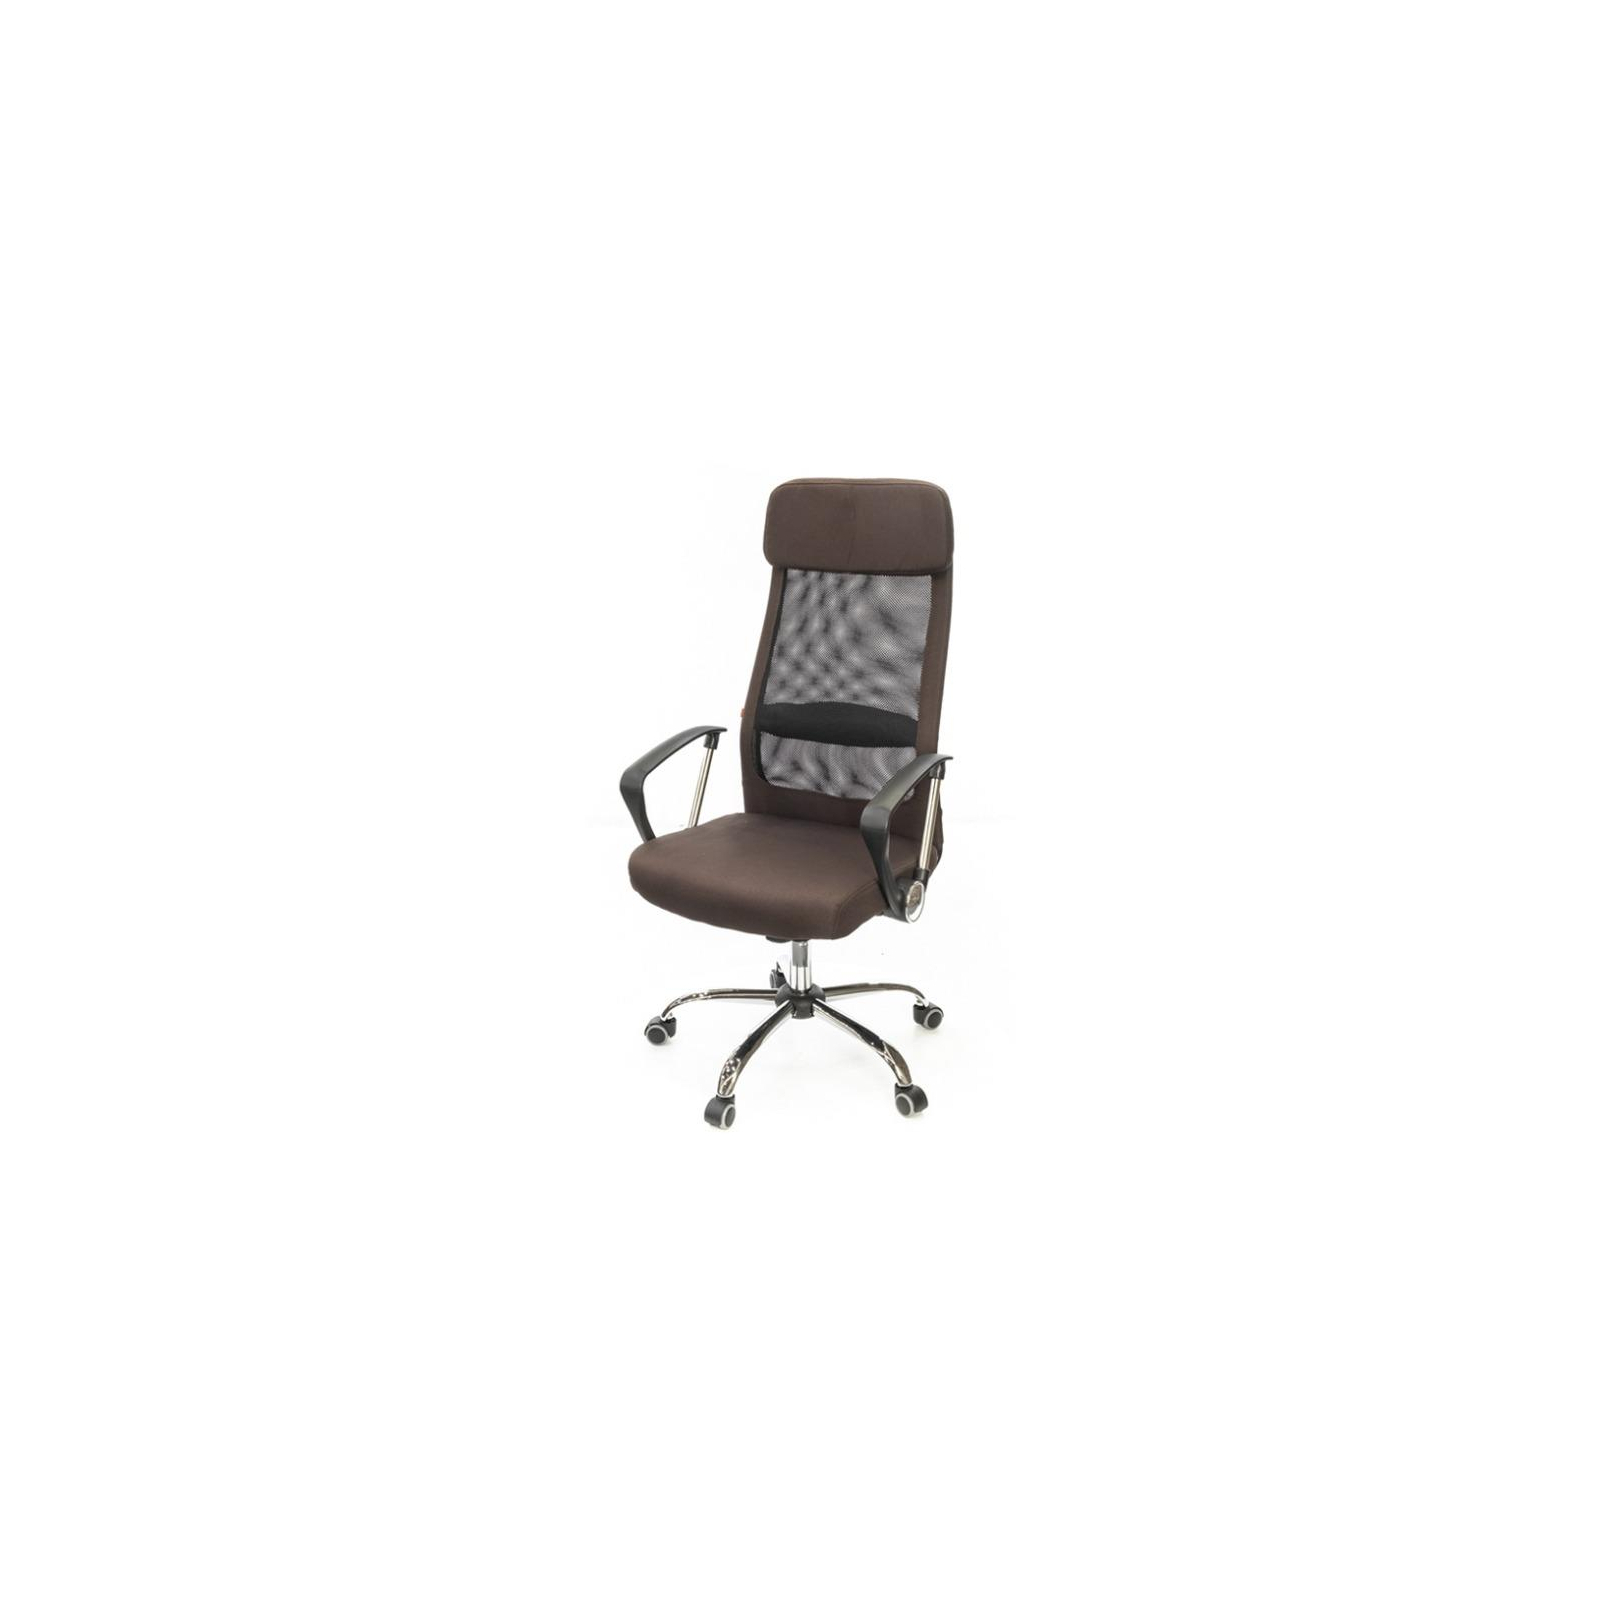 Офисное кресло Аклас Гилмор FX CH TILT Оранжевое (11032)